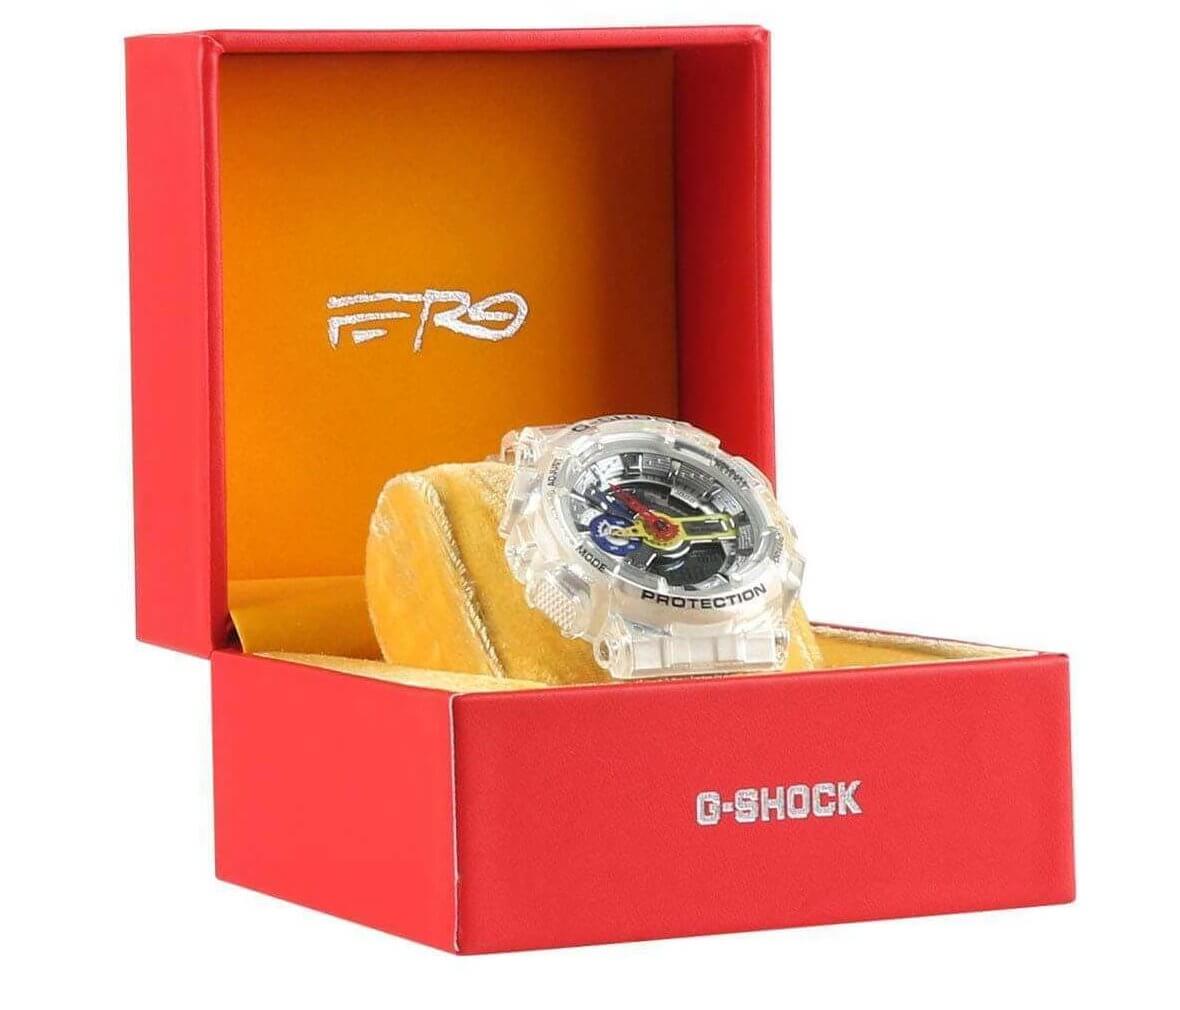 A$AP Ferg x G-Shock GA-110FRG-7A Collaboration Watch